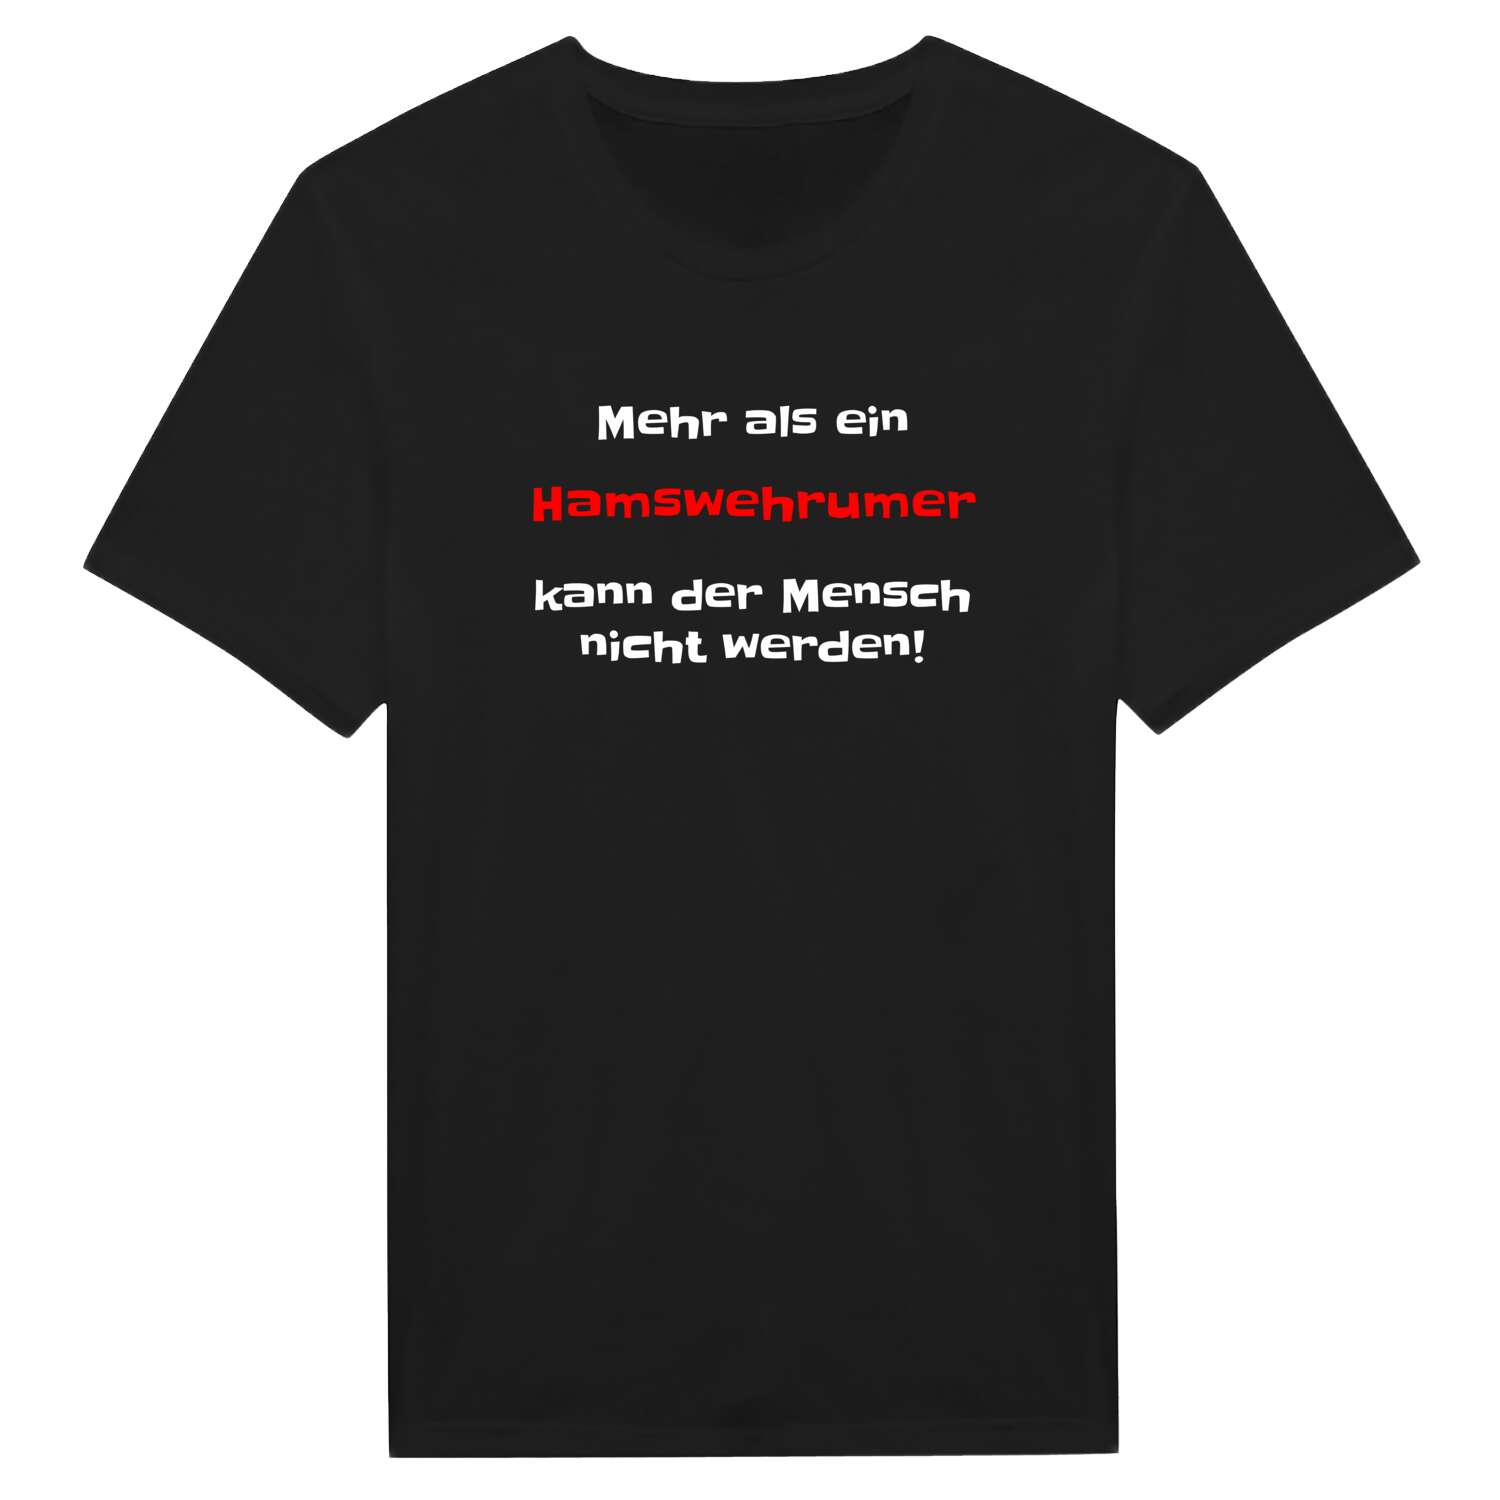 Hamswehrum T-Shirt »Mehr als ein«